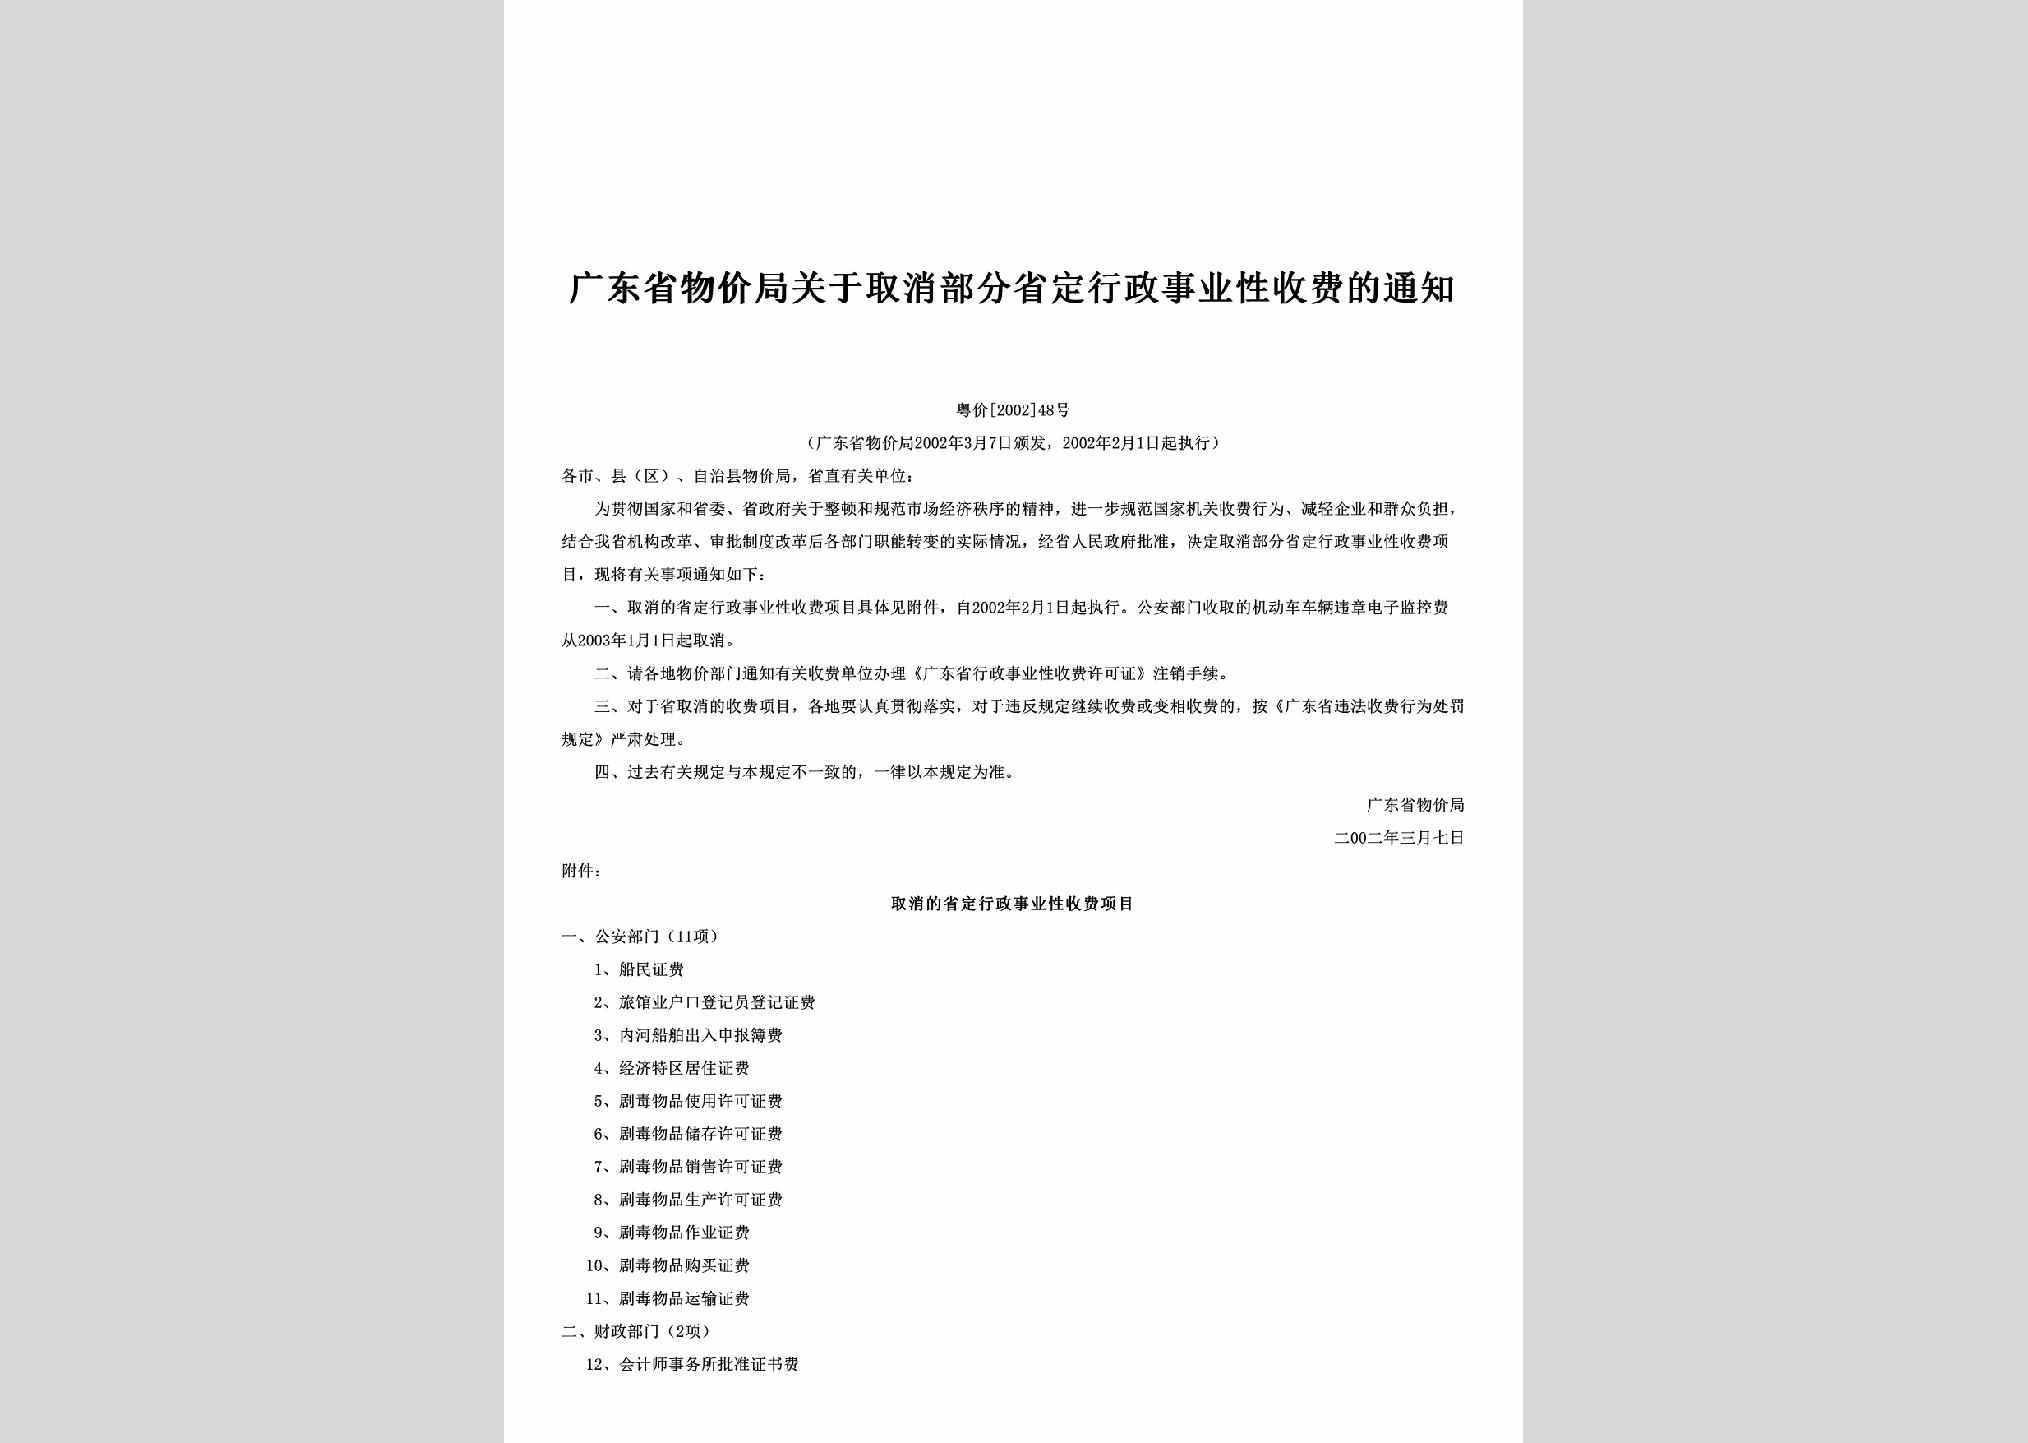 粤价[2002]48号：关于取消部分省定行政事业性收费的通知